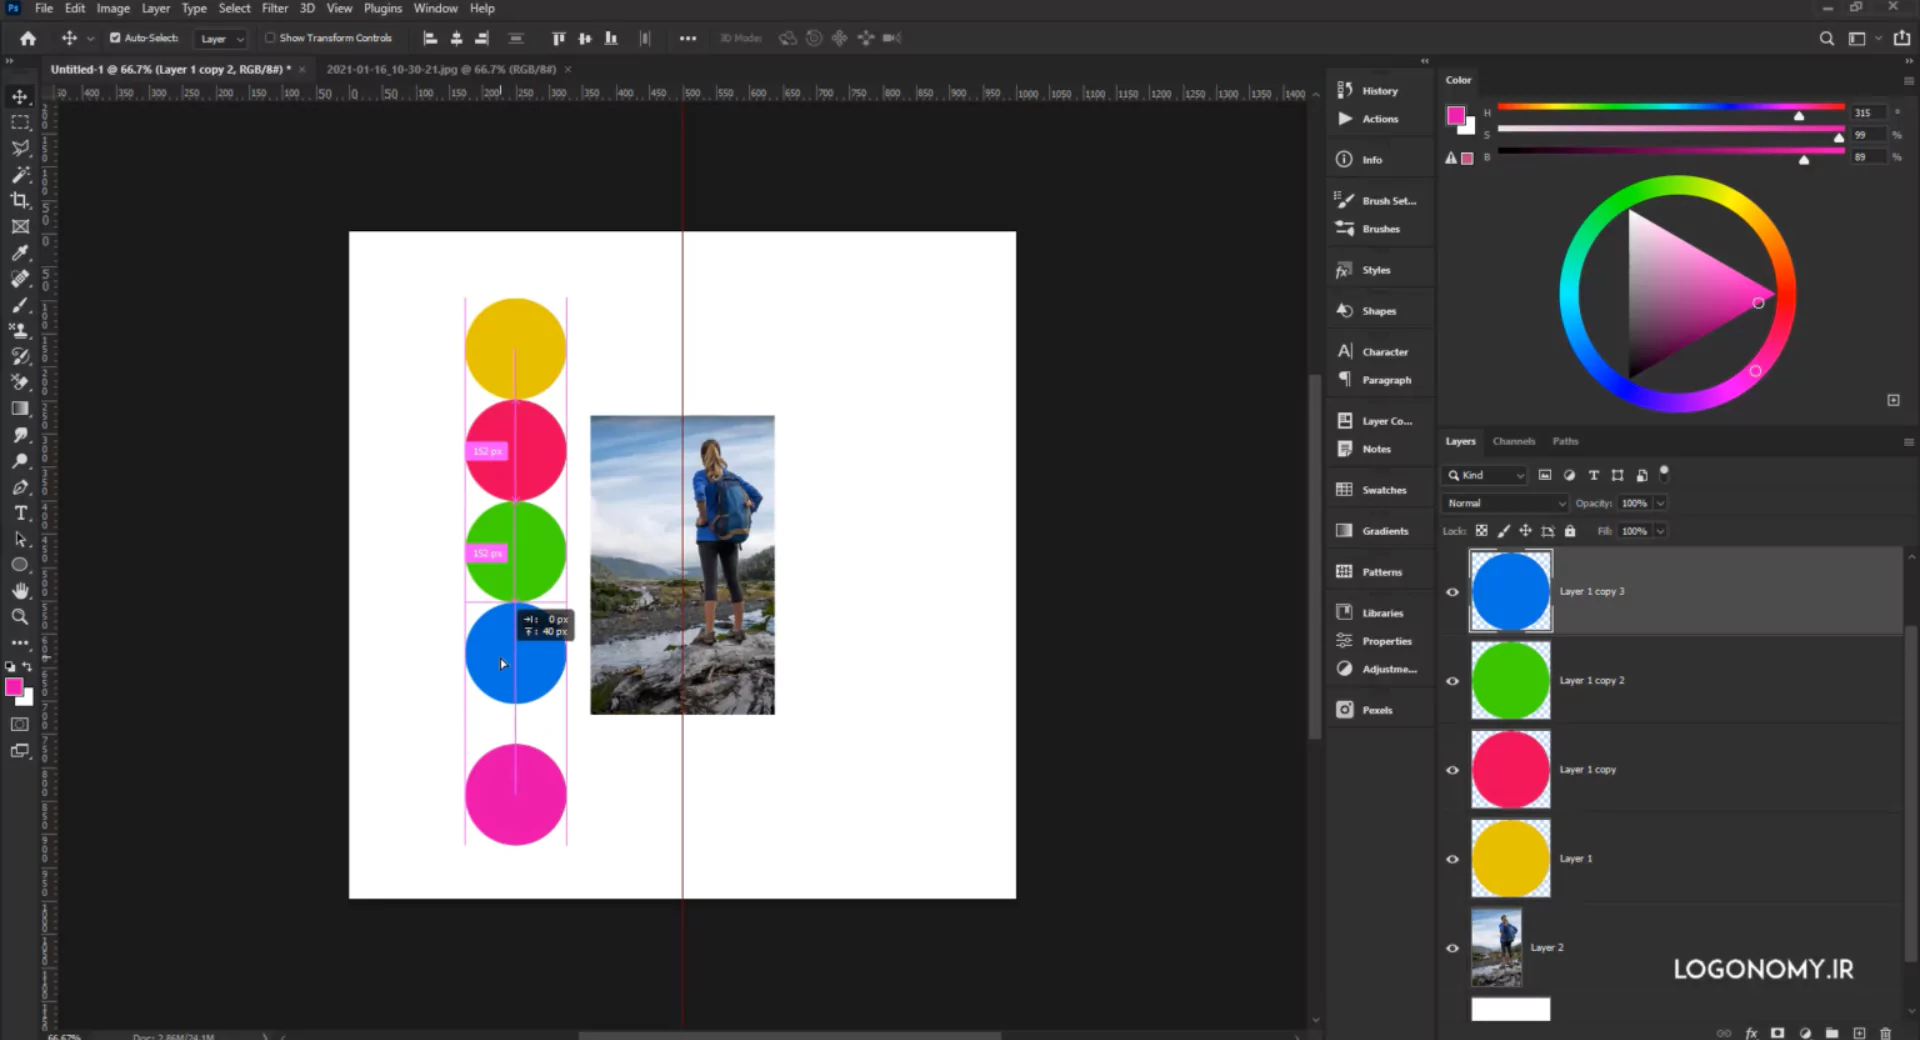 در فتوشاپ (Photoshop) پنل جداگانه ای برای Alignment کردن نداریم. ابزارهای ترازبندی (Alignment) فقط زمانی ظاهر می شوند که لایه ها باهم انتخاب شده باشند.